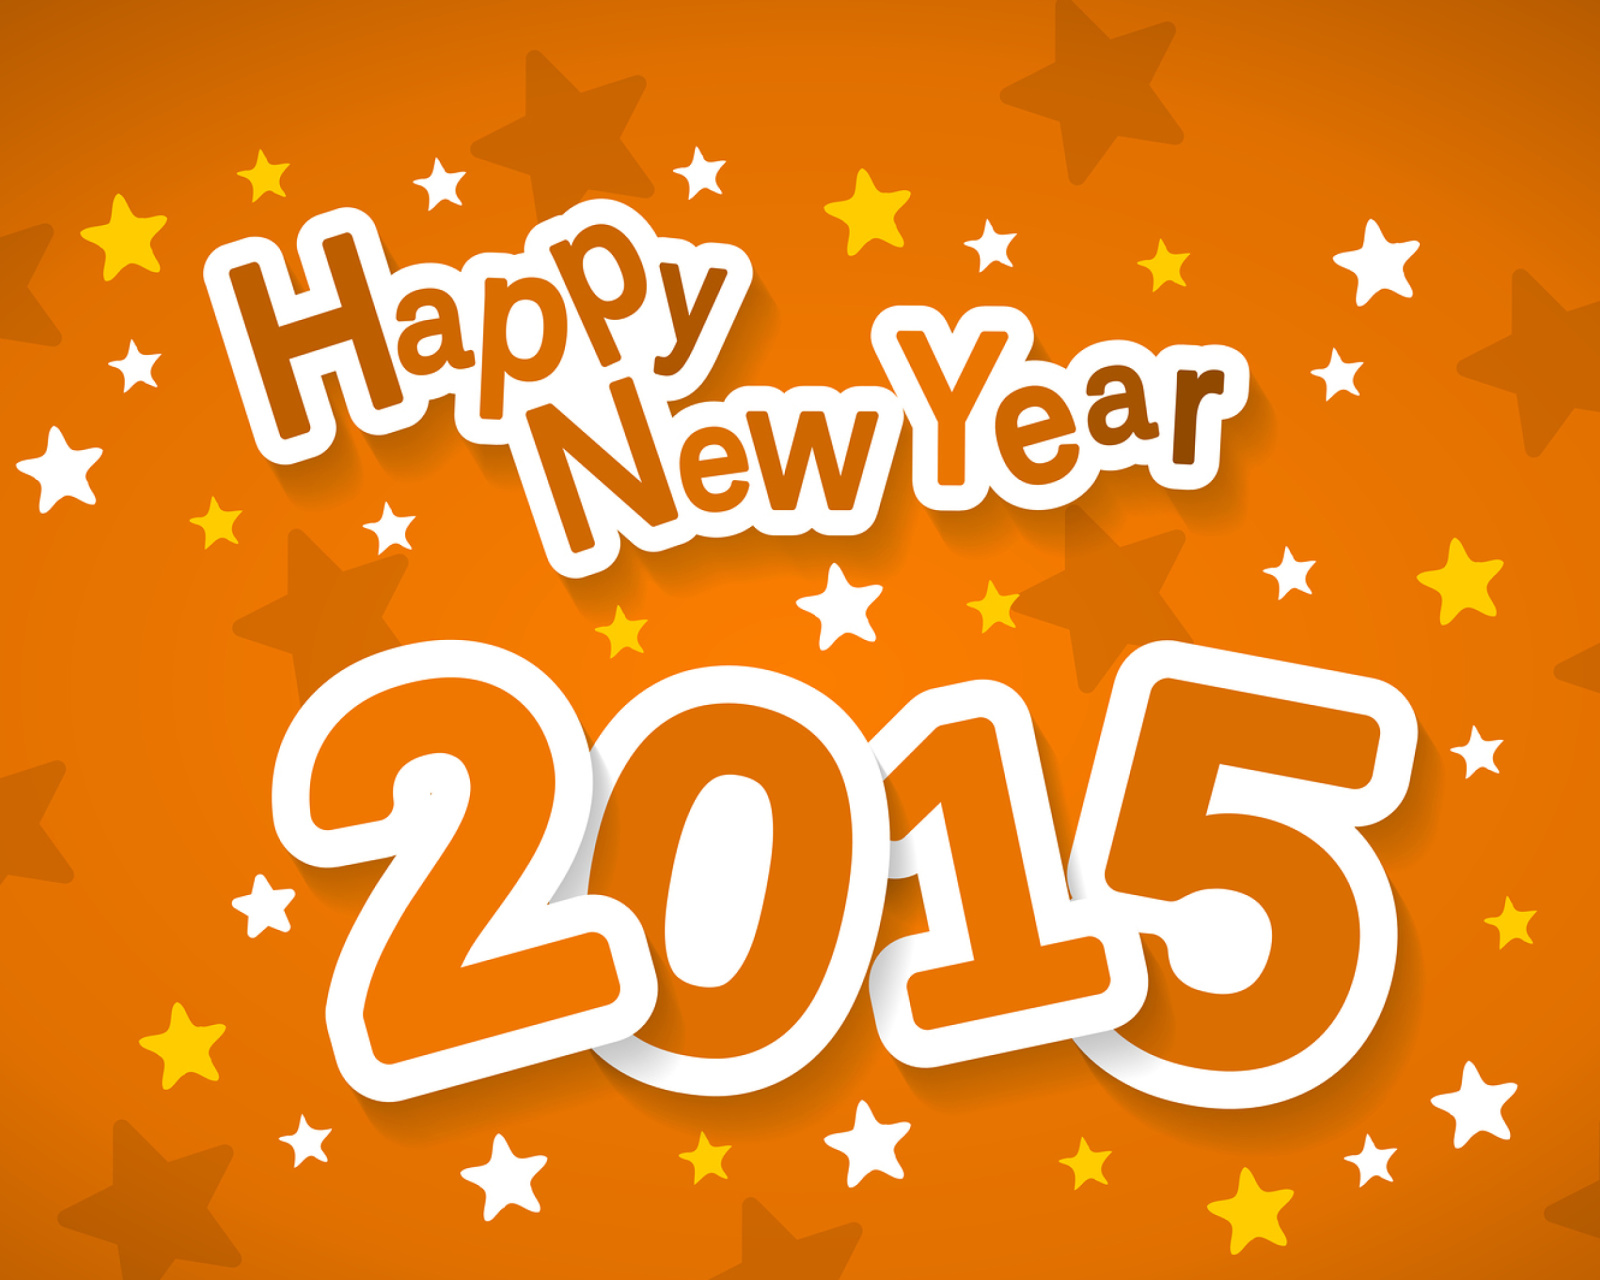 Обои Happy New Year 2015 1600x1280